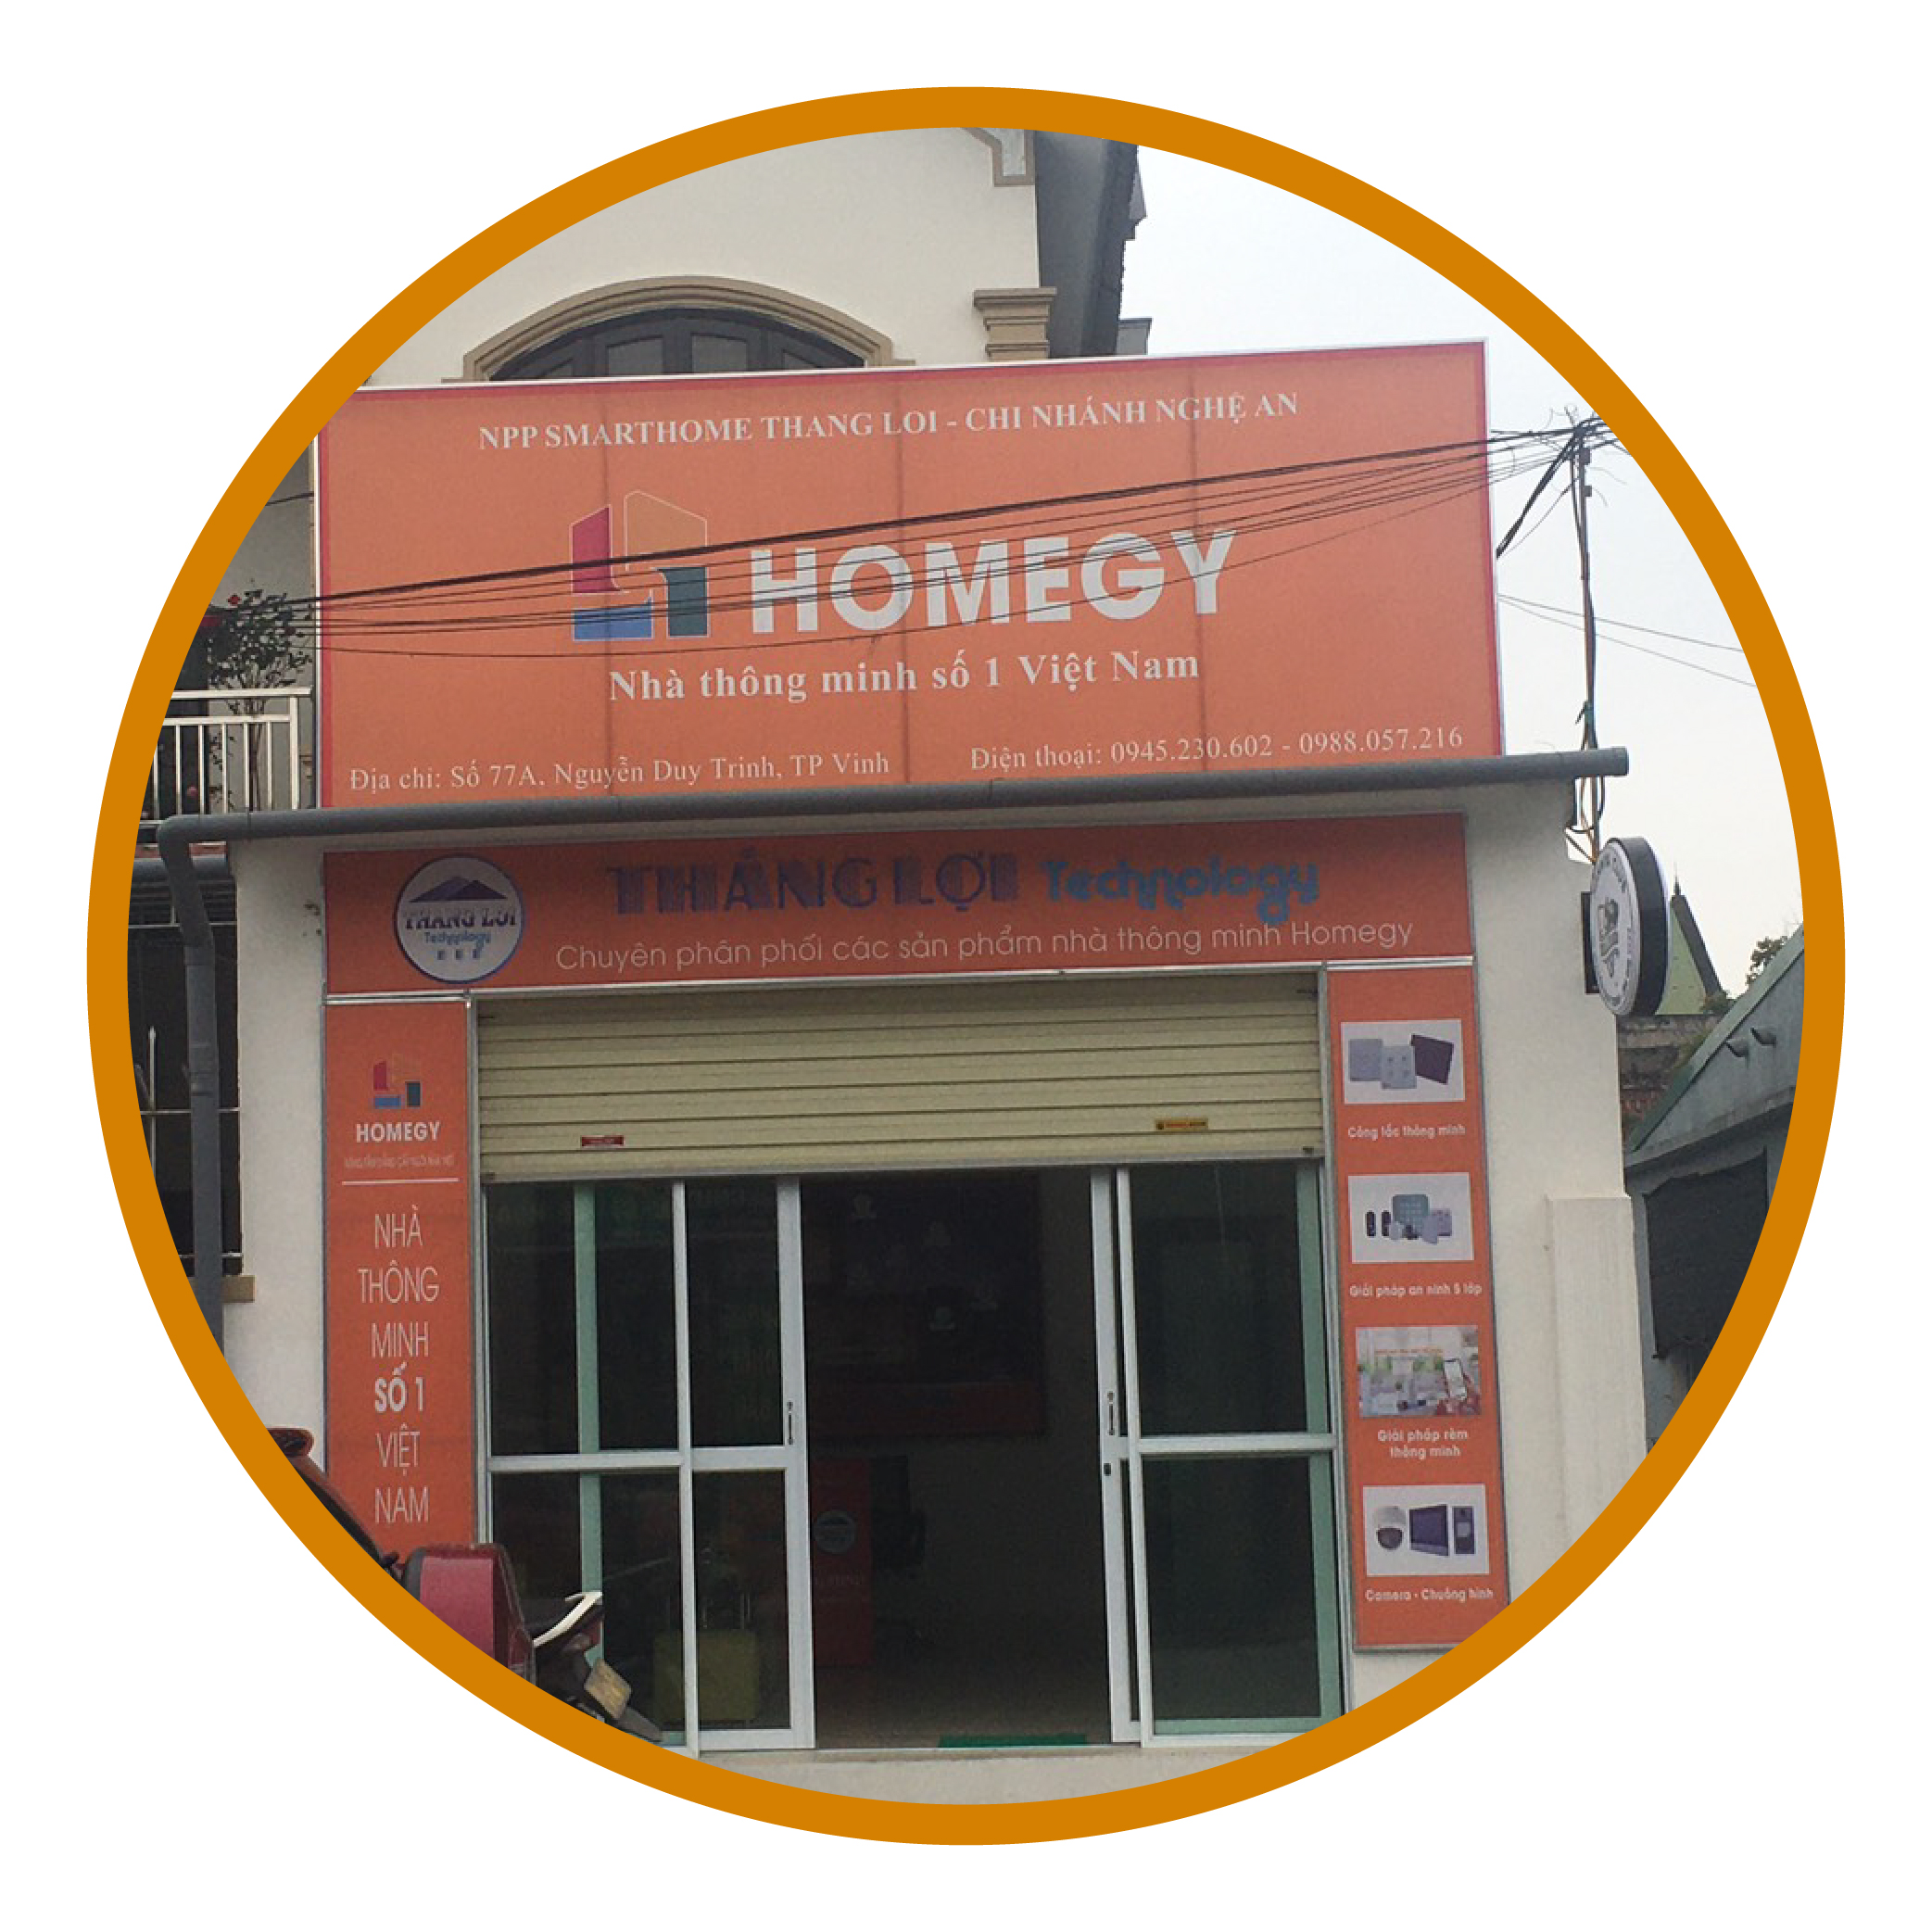 Đại lý nhà thông minh Homegy: Đến với Homegy, bạn sẽ được trải nghiệm các sản phẩm nhà thông minh chất lượng và hiệu quả cao. Với đội ngũ kỹ thuật viên tay nghề cao, Homegy mang đến cho bạn dịch vụ hậu mãi tuyệt vời và giá cả hợp lý. Hãy tạo nên một cuộc sống tiện nghi và thông minh hơn với Homegy.